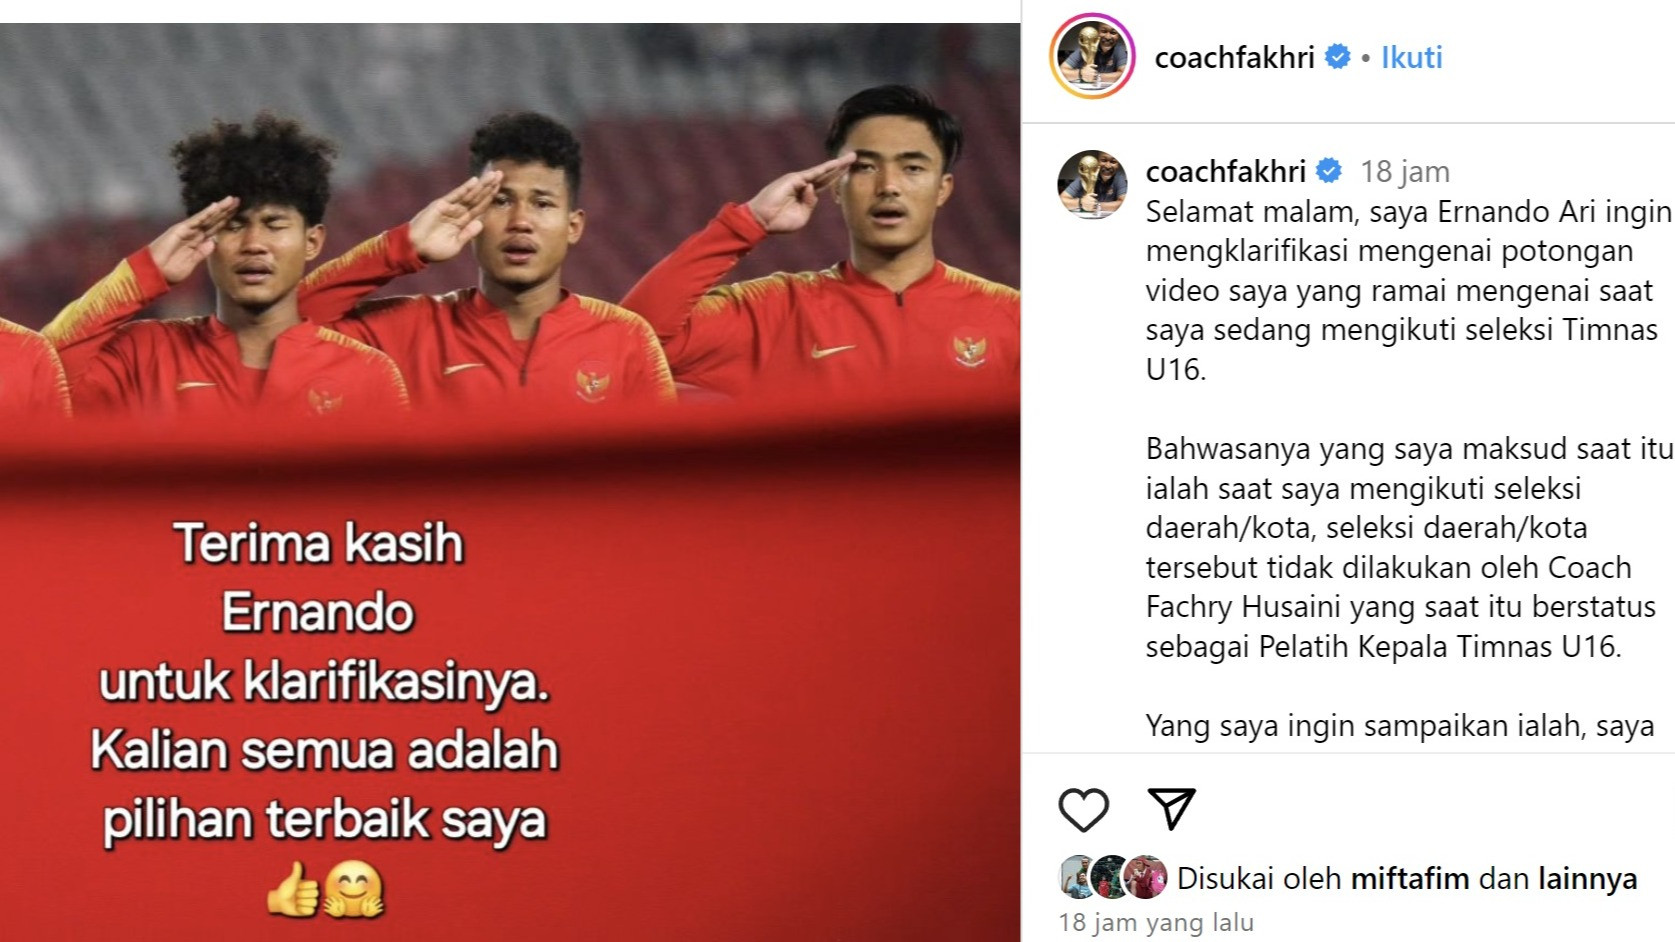 Tanggapan Santai Coach Fakhri Husaini soal Potongan Video Ernando Ari yang Bicara Pemain Titipan di Seleksi Timnas Indonesia U-16